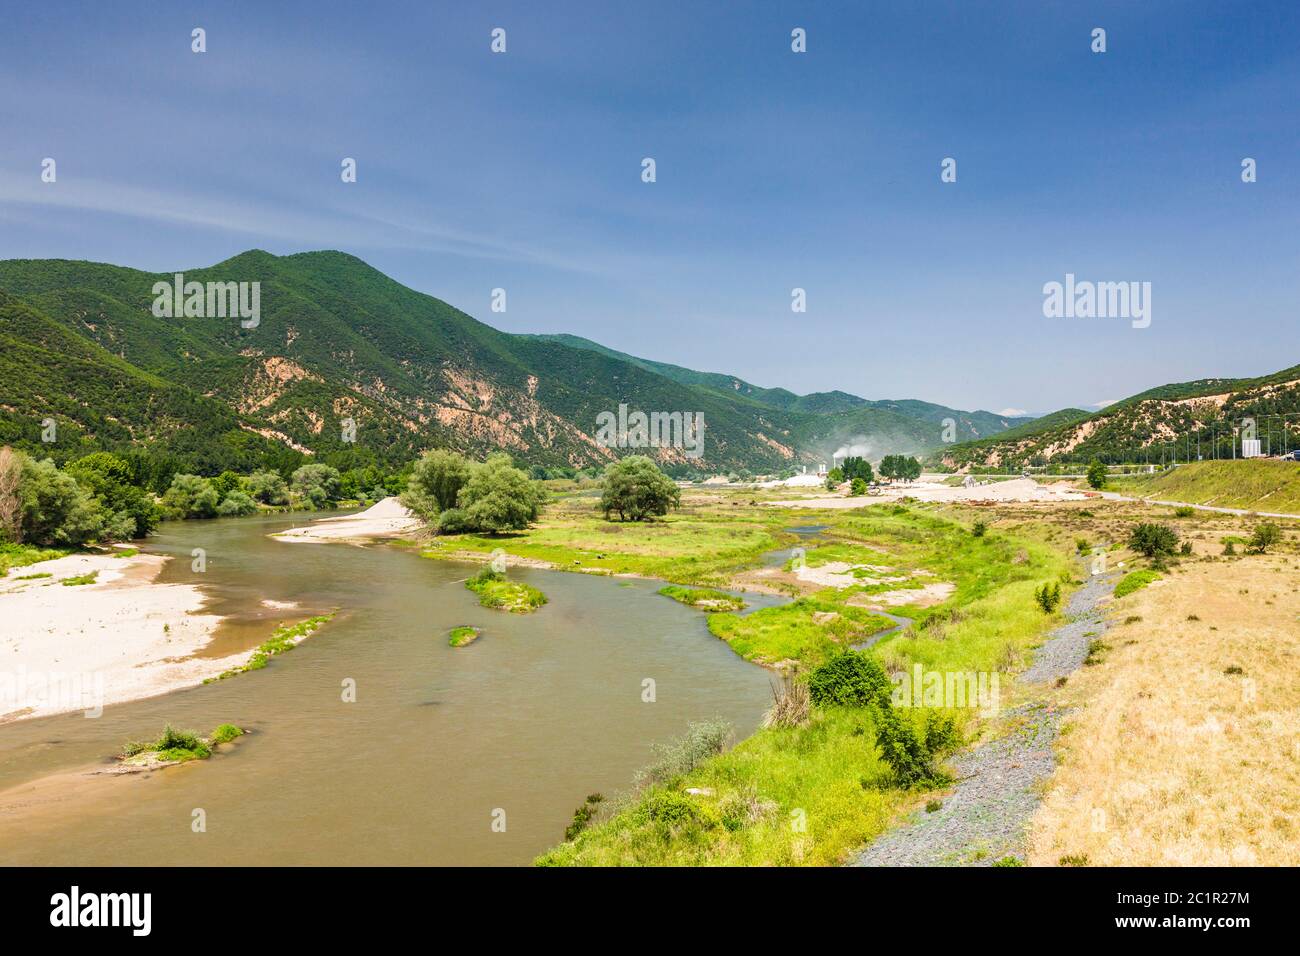 Río Struma, antiguo río strymon, cerca de la frontera búlgara, paisaje de la región de Macedonia, suburbio de Serres,Macedonia central,Grecia,Europa Foto de stock